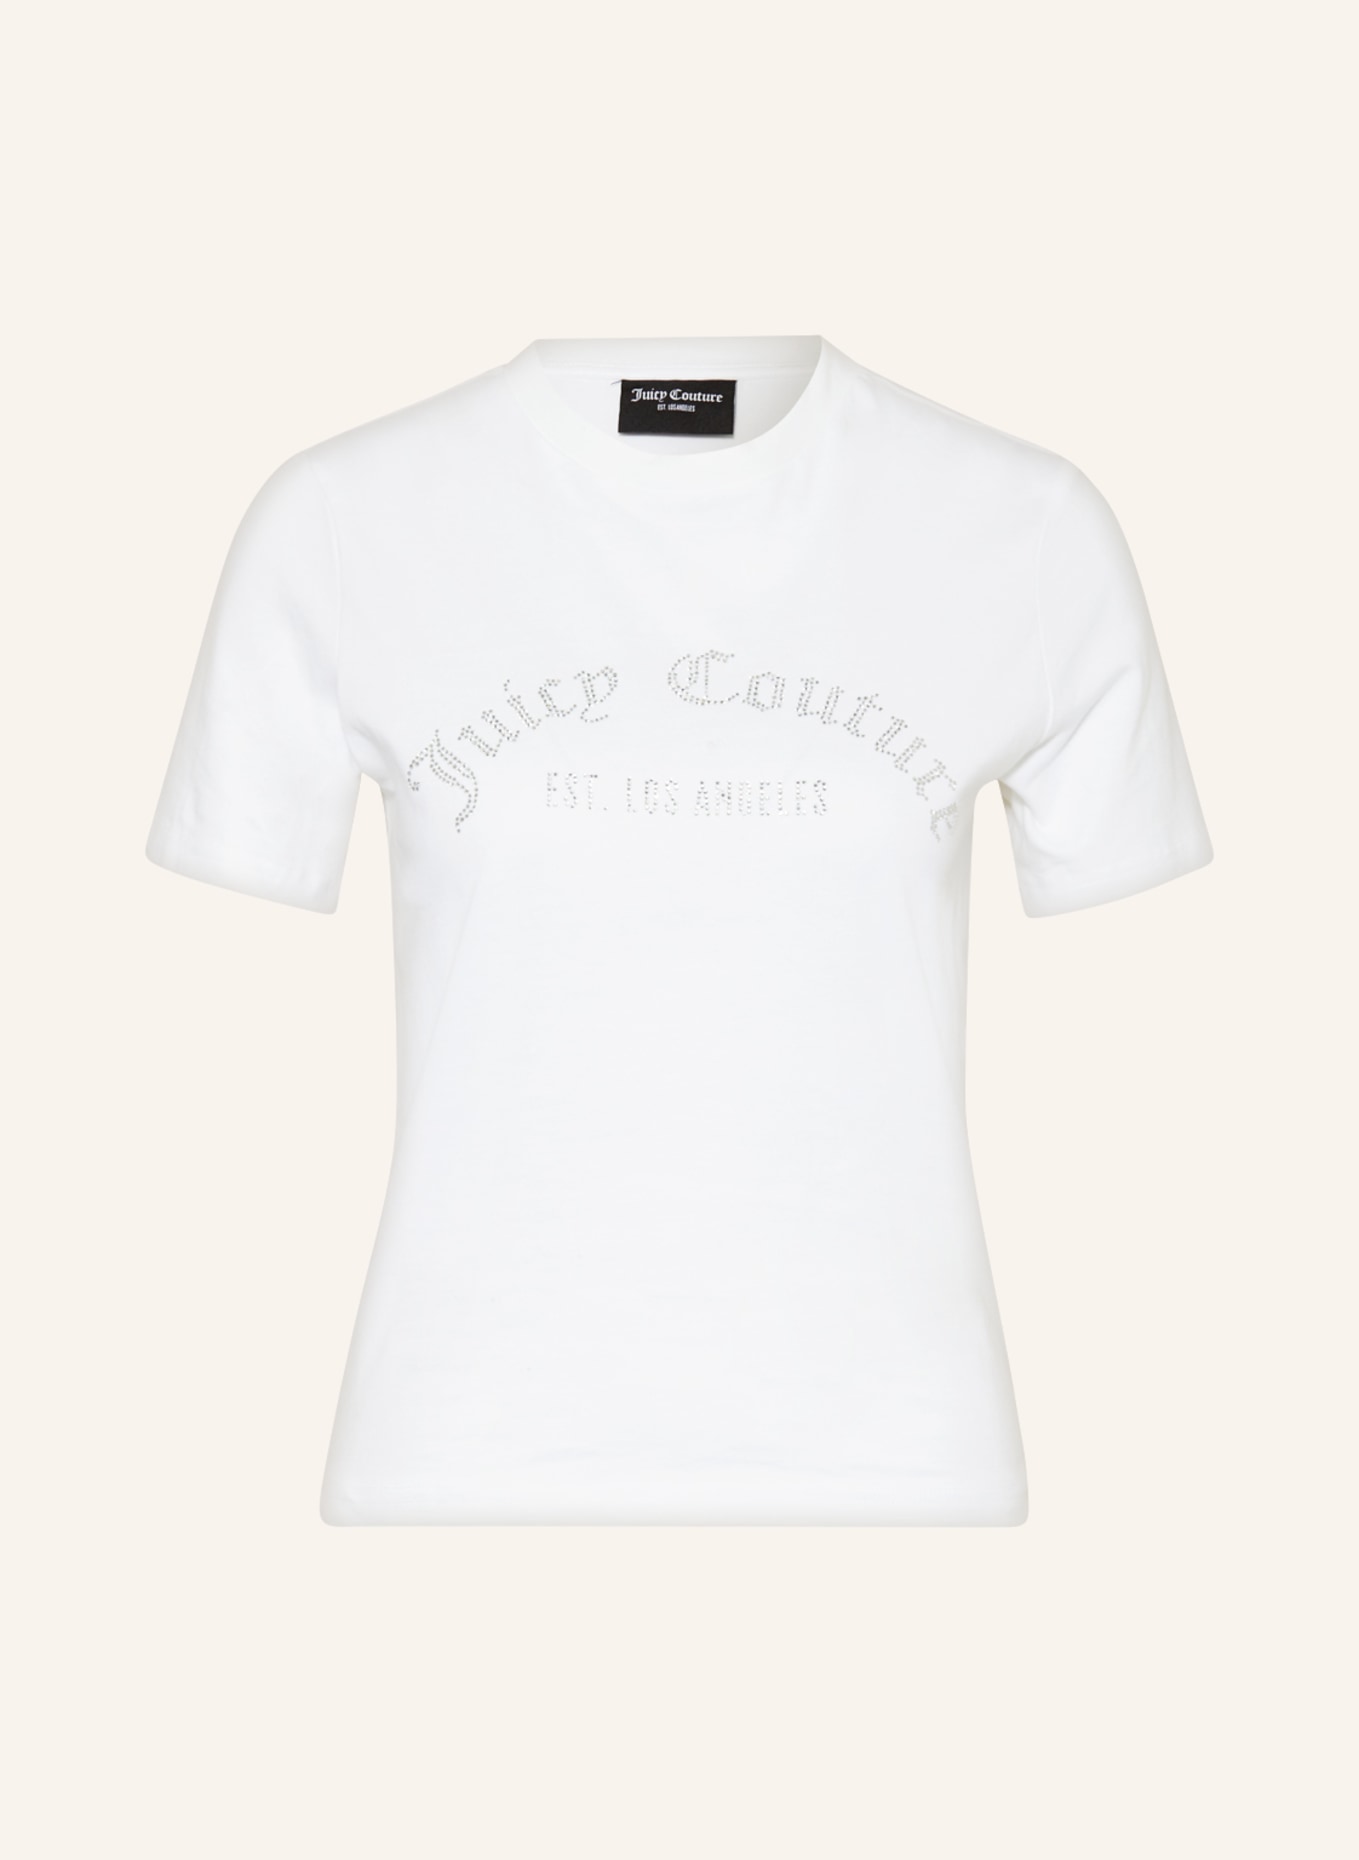 Juicy Couture T-Shirt NOAH mit Schmucksteinen, Farbe: WEISS (Bild 1)